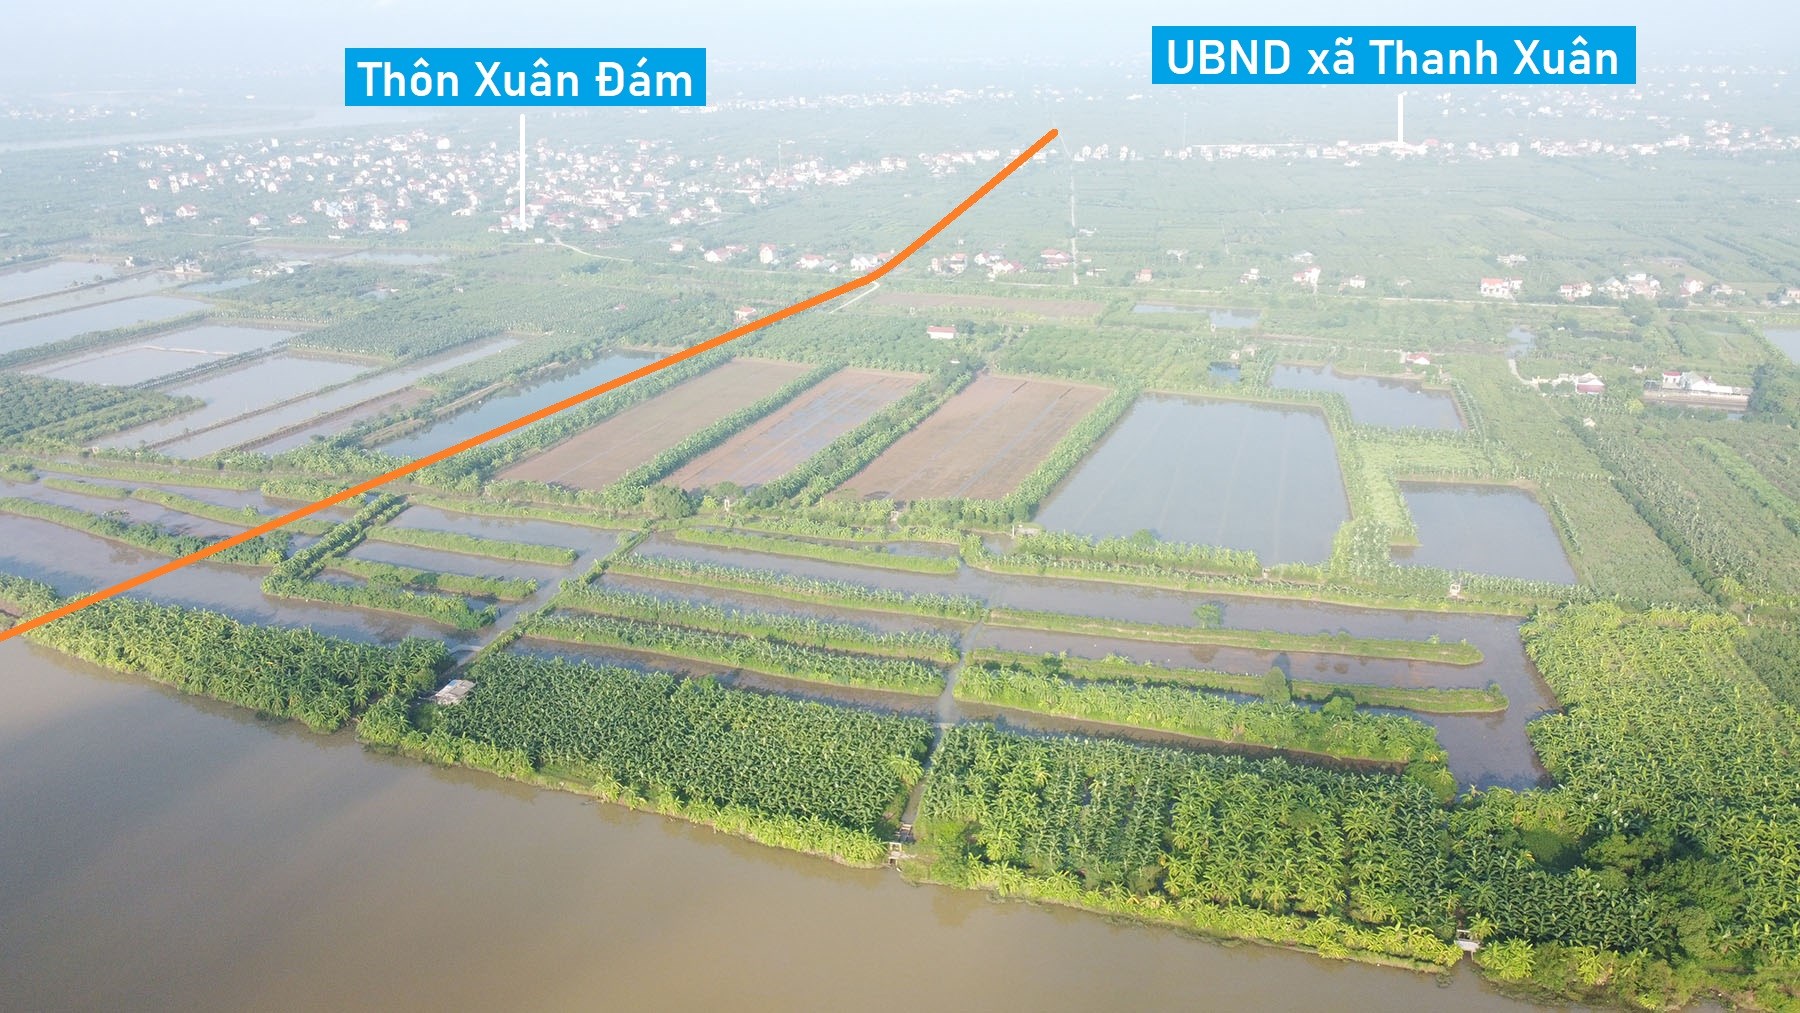 Toàn cảnh vị trí dự kiến quy hoạch cầu vượt sộng Rạng nối Thanh Hà - Kim Thành, Hải Dương